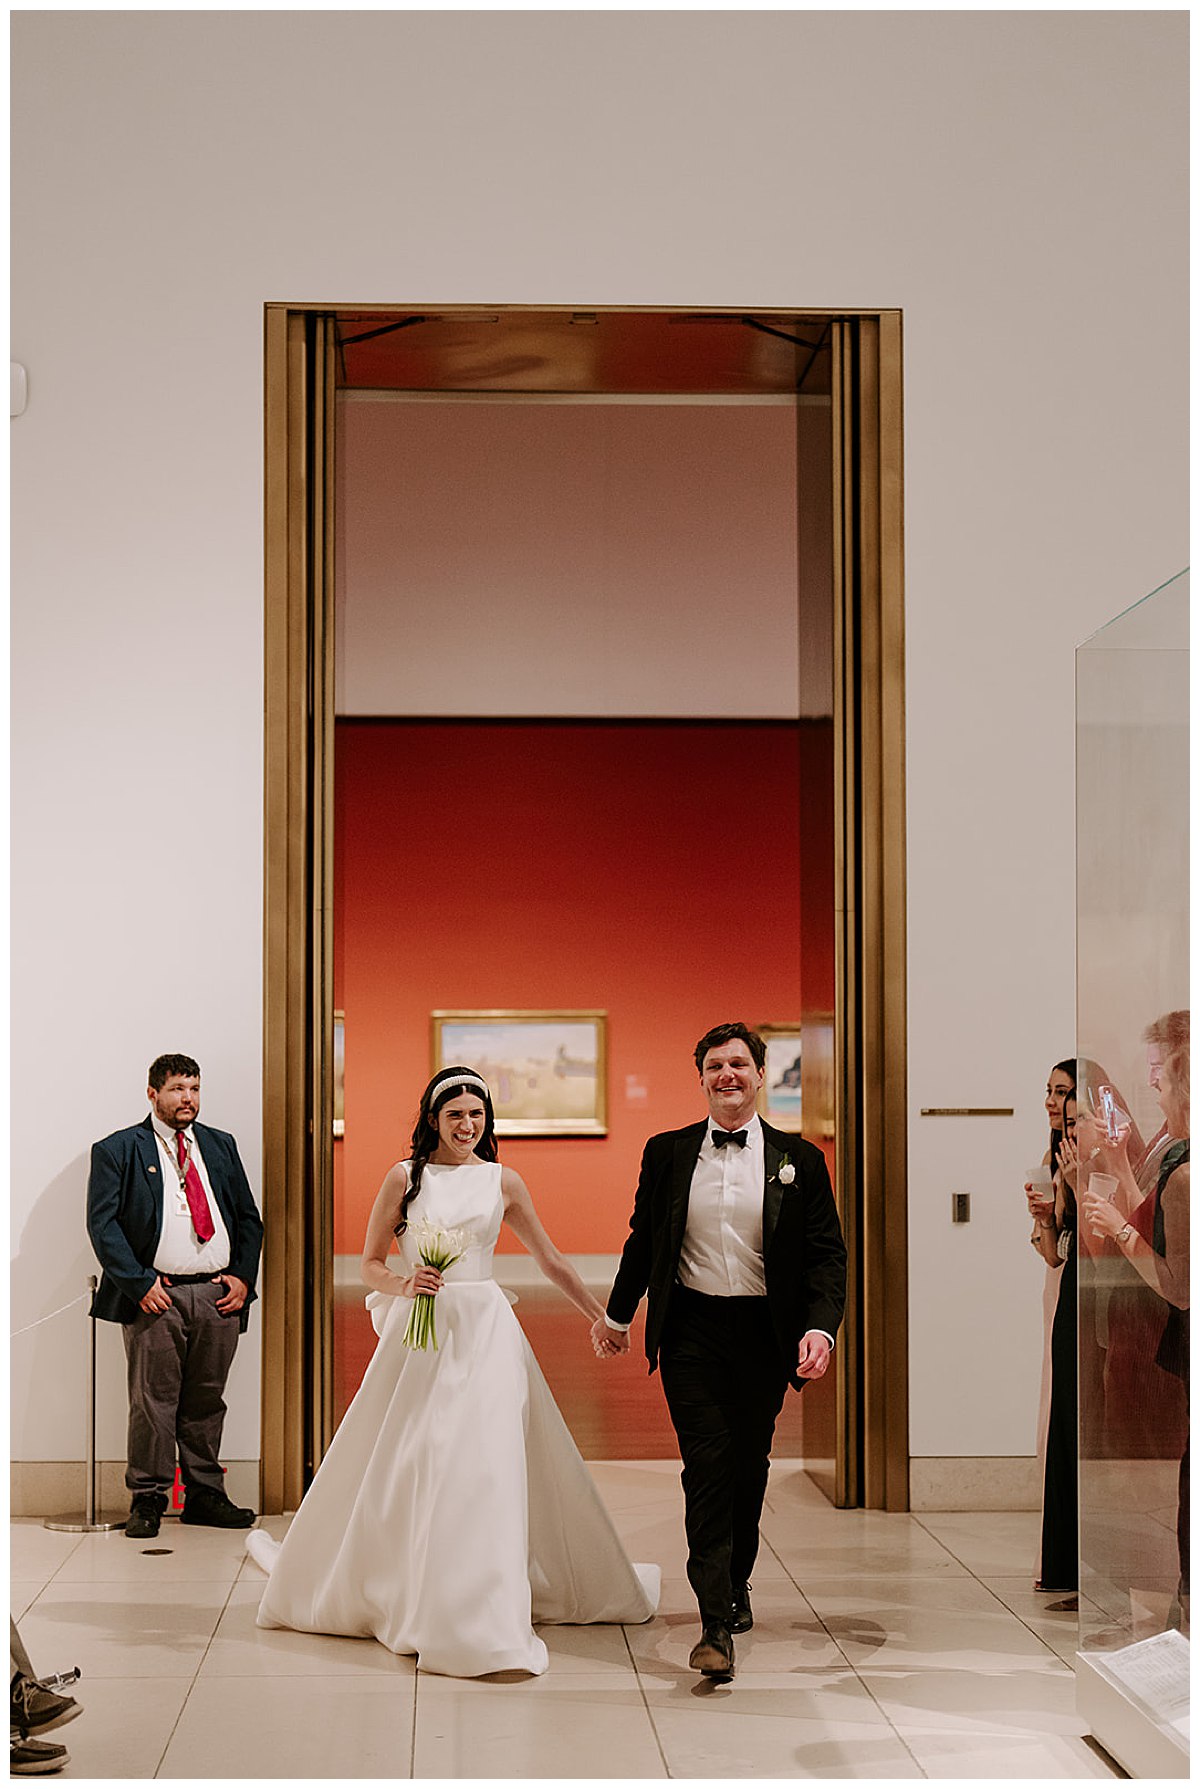 couples entrance into reception 